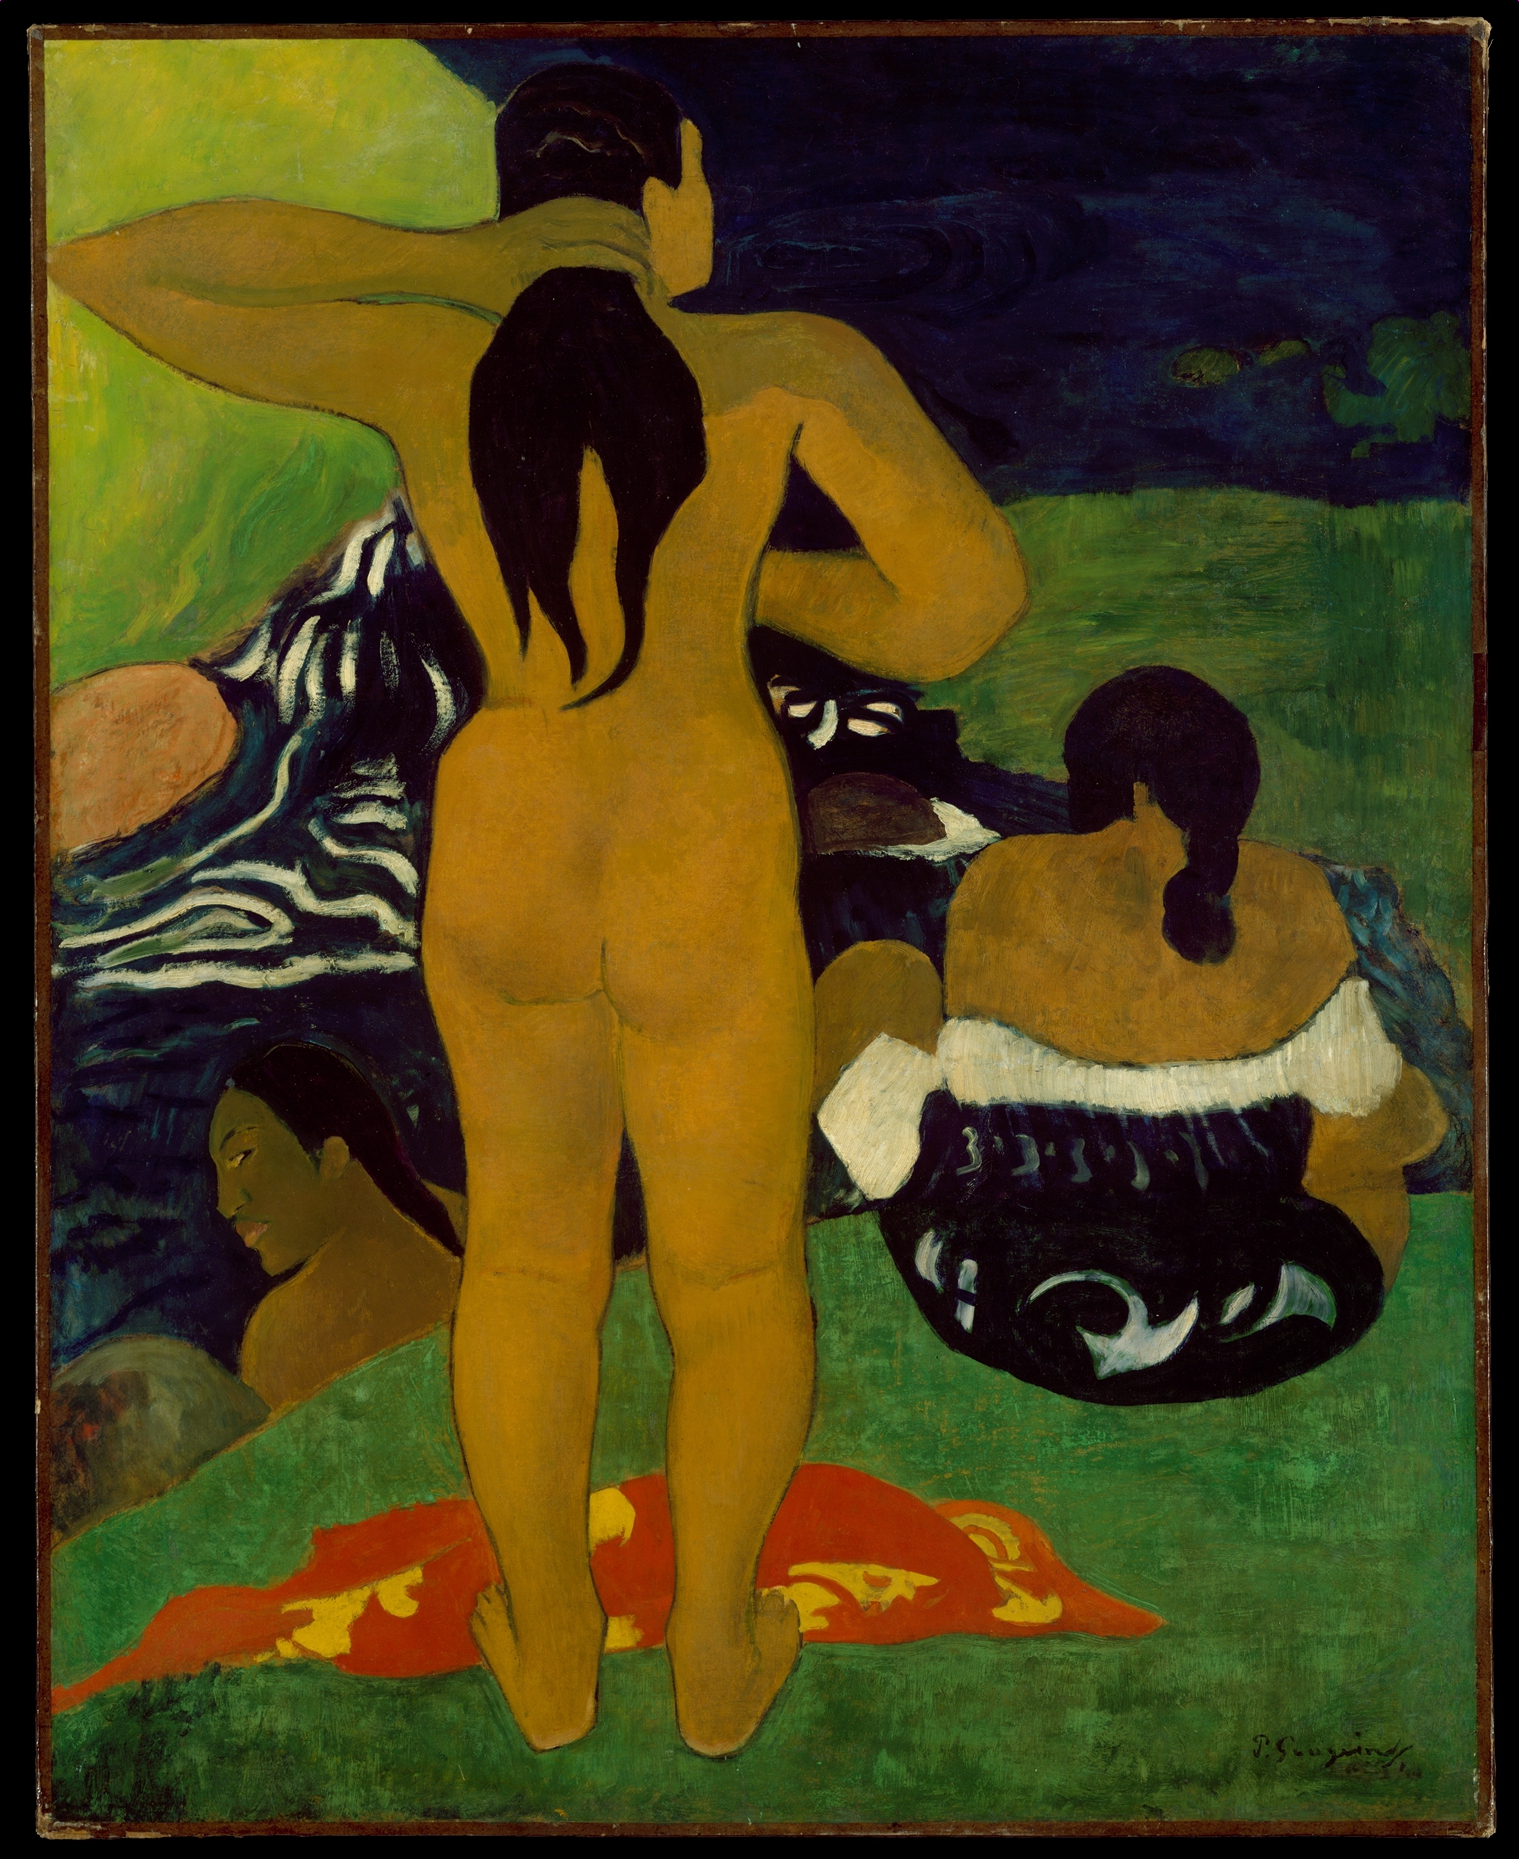 大溪地的出浴女子 by Paul Gauguin - 1892 - 43 3/4 x 35 1/8 寸 